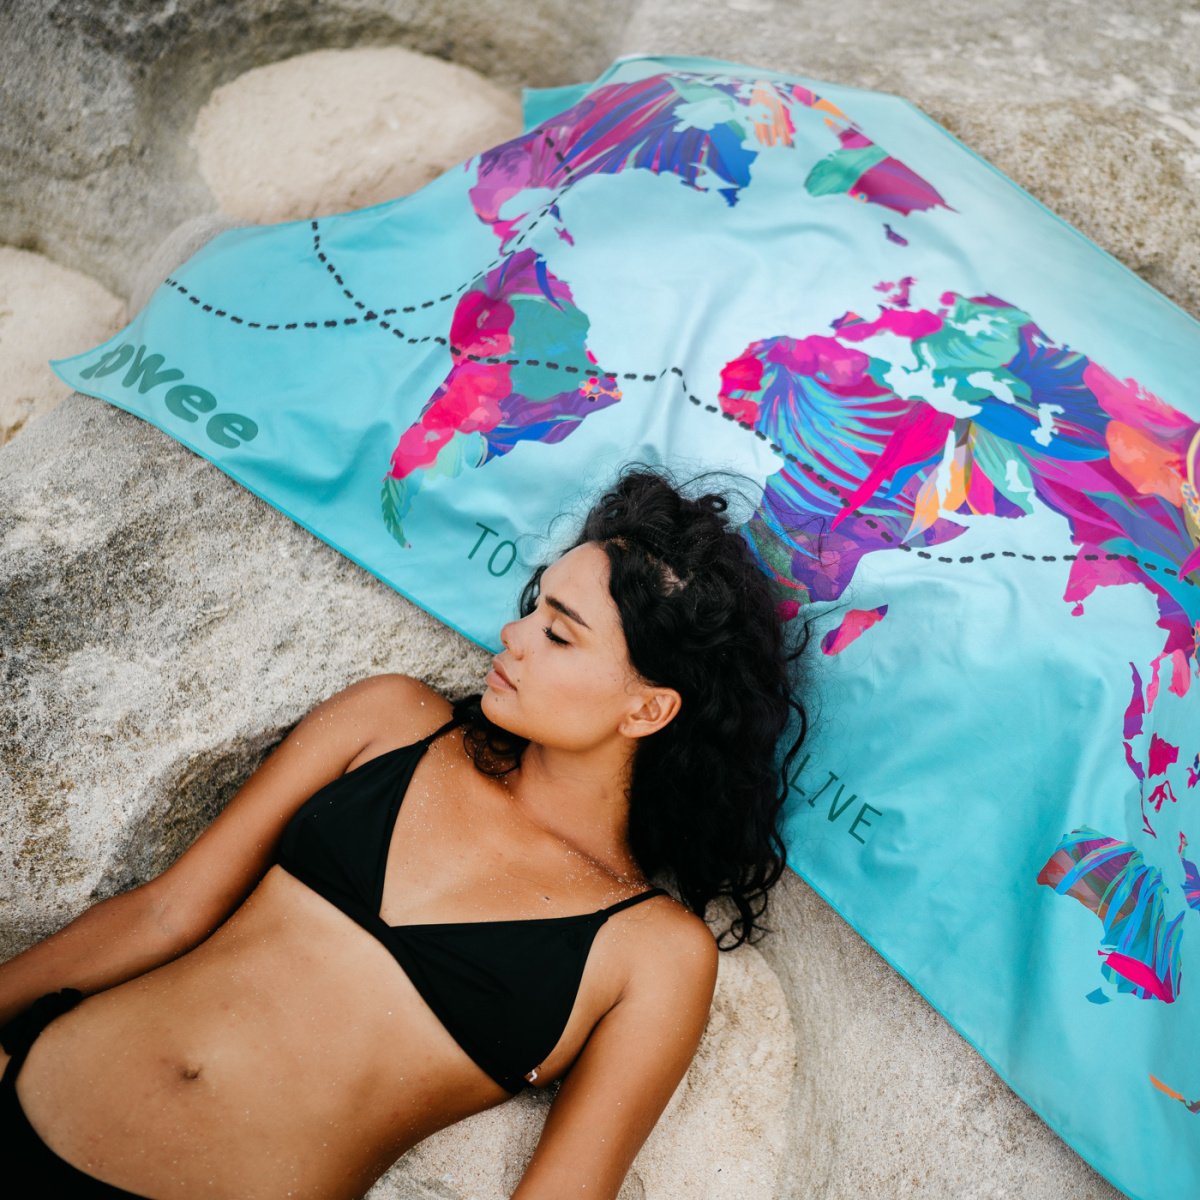 Schnell -drying -Handtuch reisen Sie die Welt